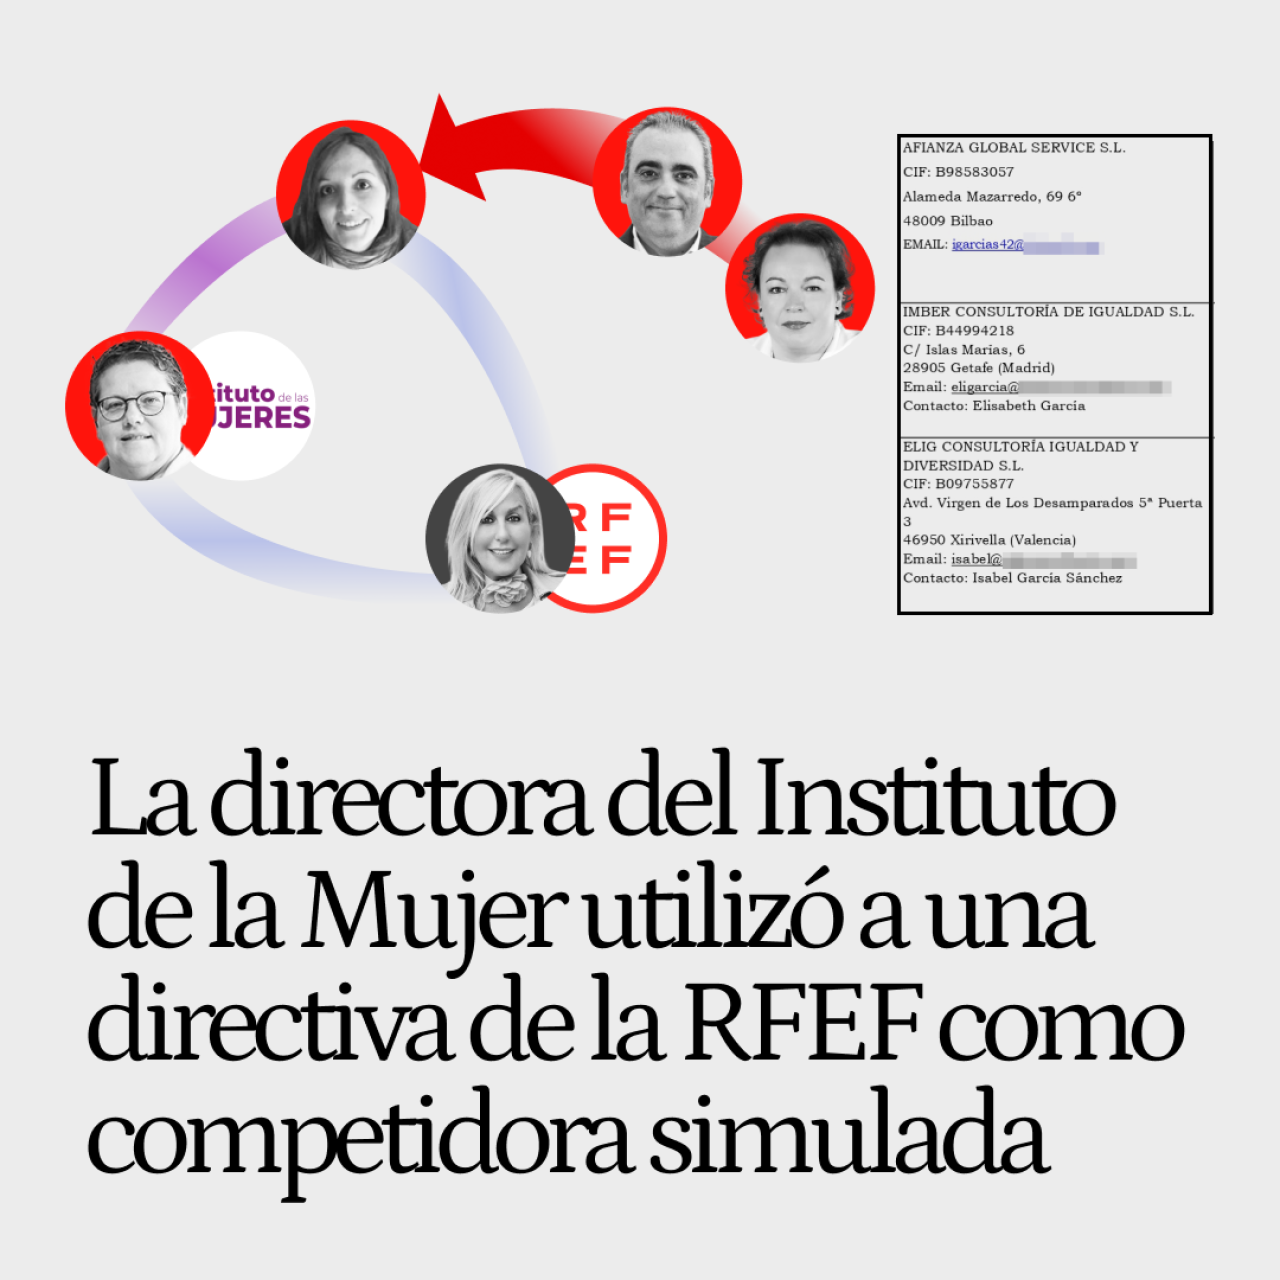 La directora del Instituto de la Mujer utilizó a una directiva de la RFEF como competidora simulada